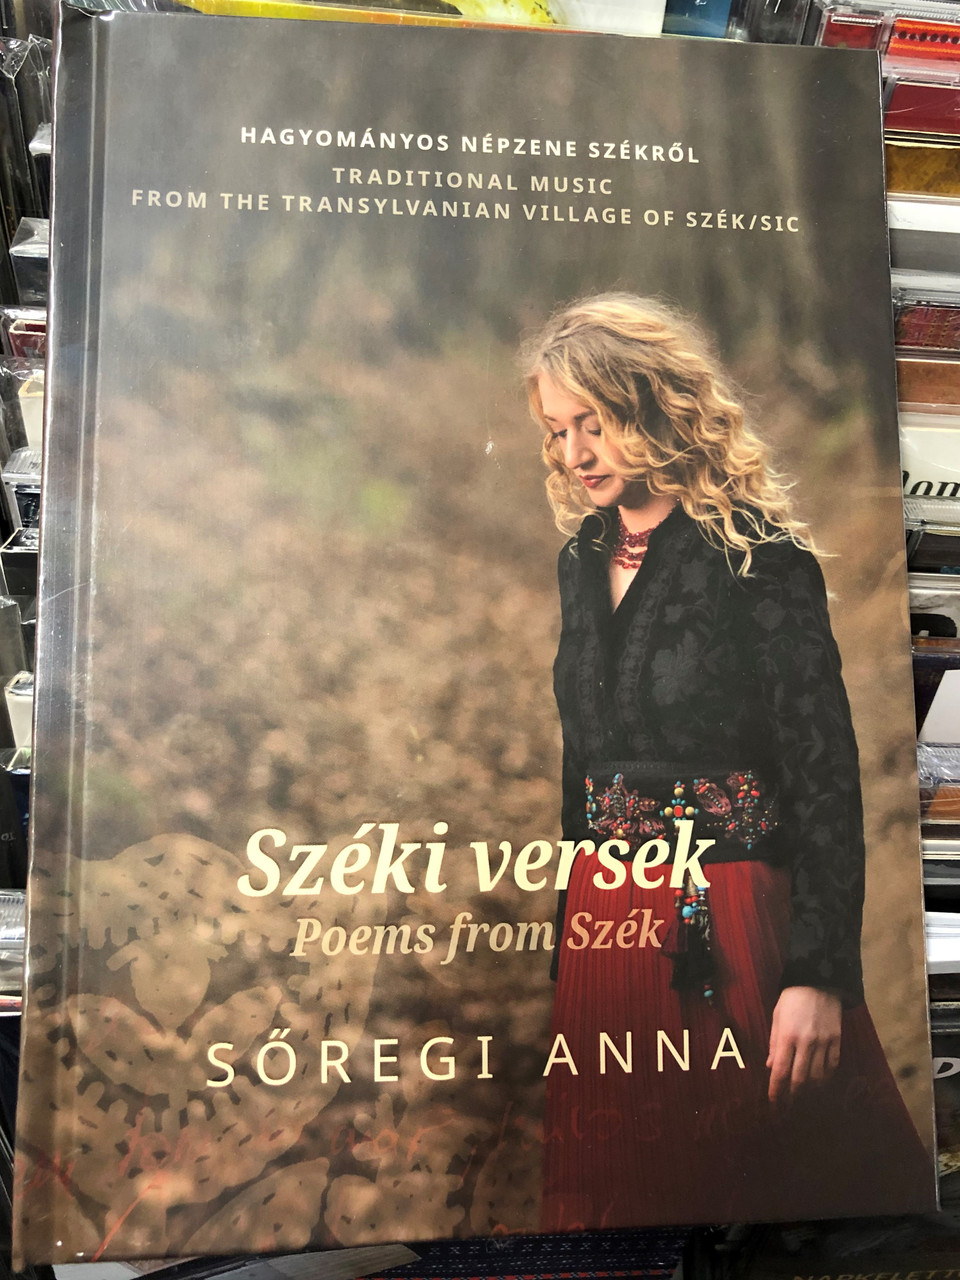 Széki versek - Poems from Szék by Sőregi Anna / Hagyományos népzene Székről  - Traditional Music from the Transylvanian Village of Szék/Sic / Fonó Audio  CD Fa 484-2 - Bible in My Language